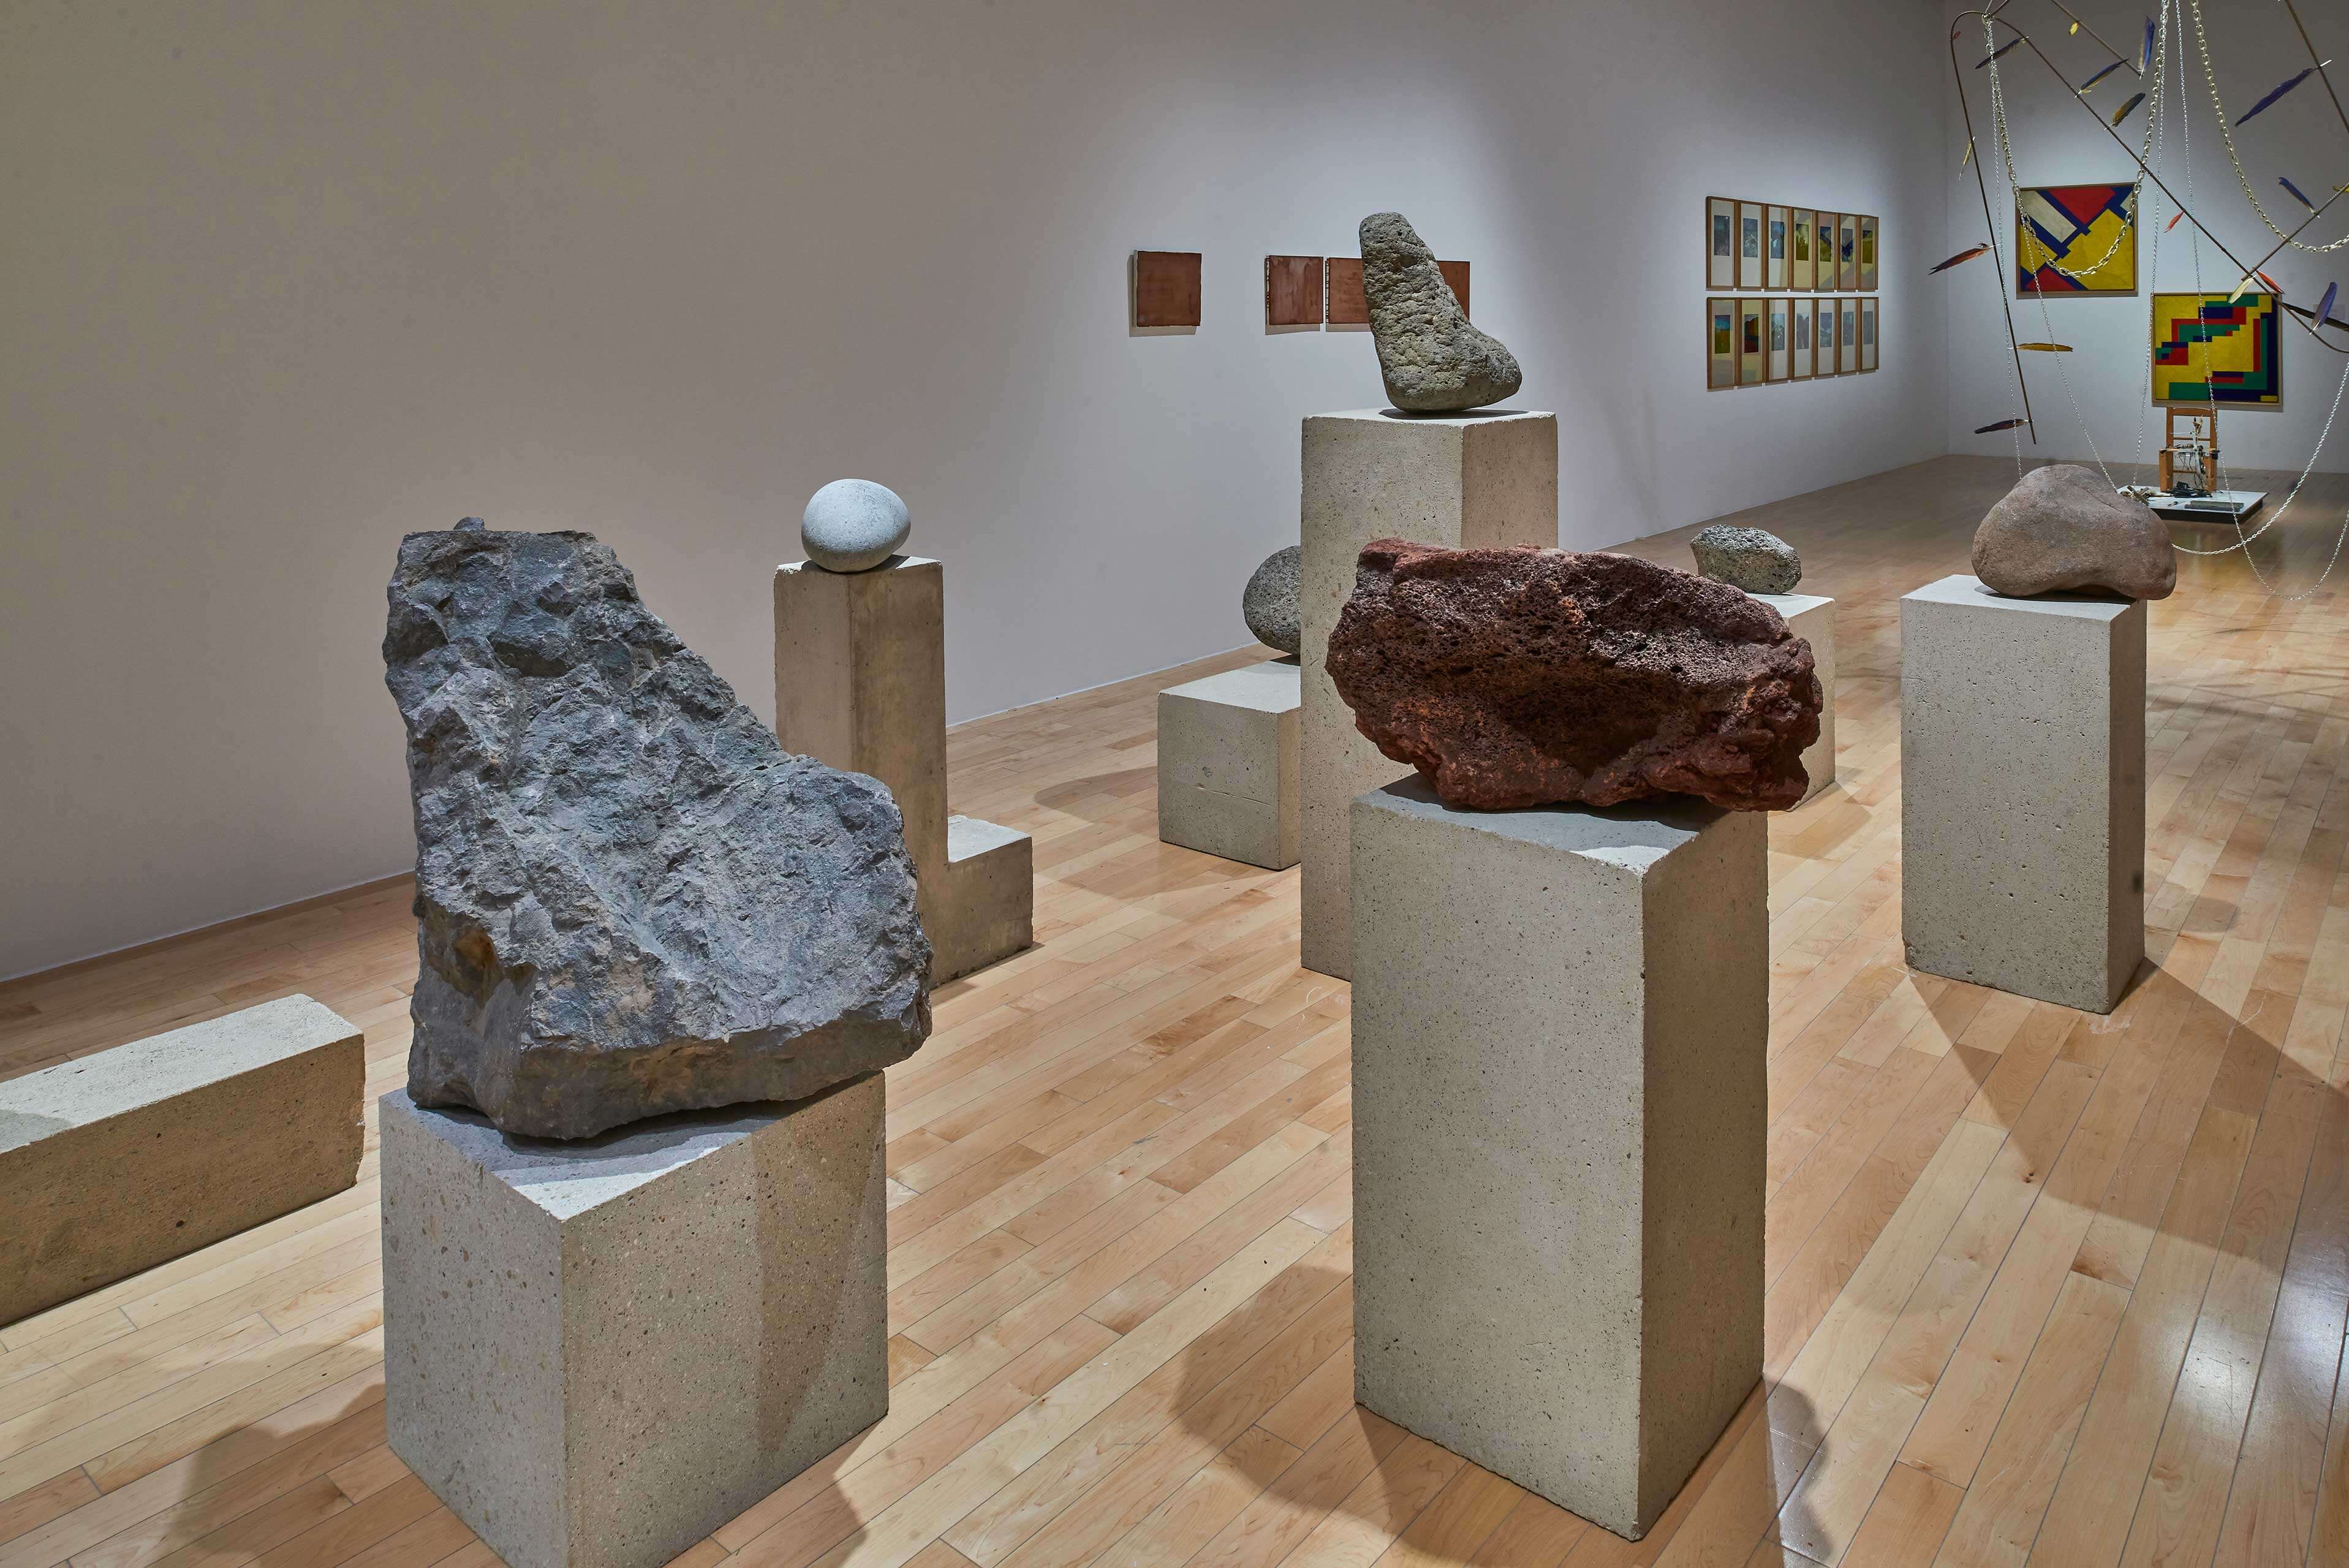 La singularidad tiene algo de irreal | El tiempo en las cosas II. Salas de Arte Contemporáneo | Museo Amparo, Puebla